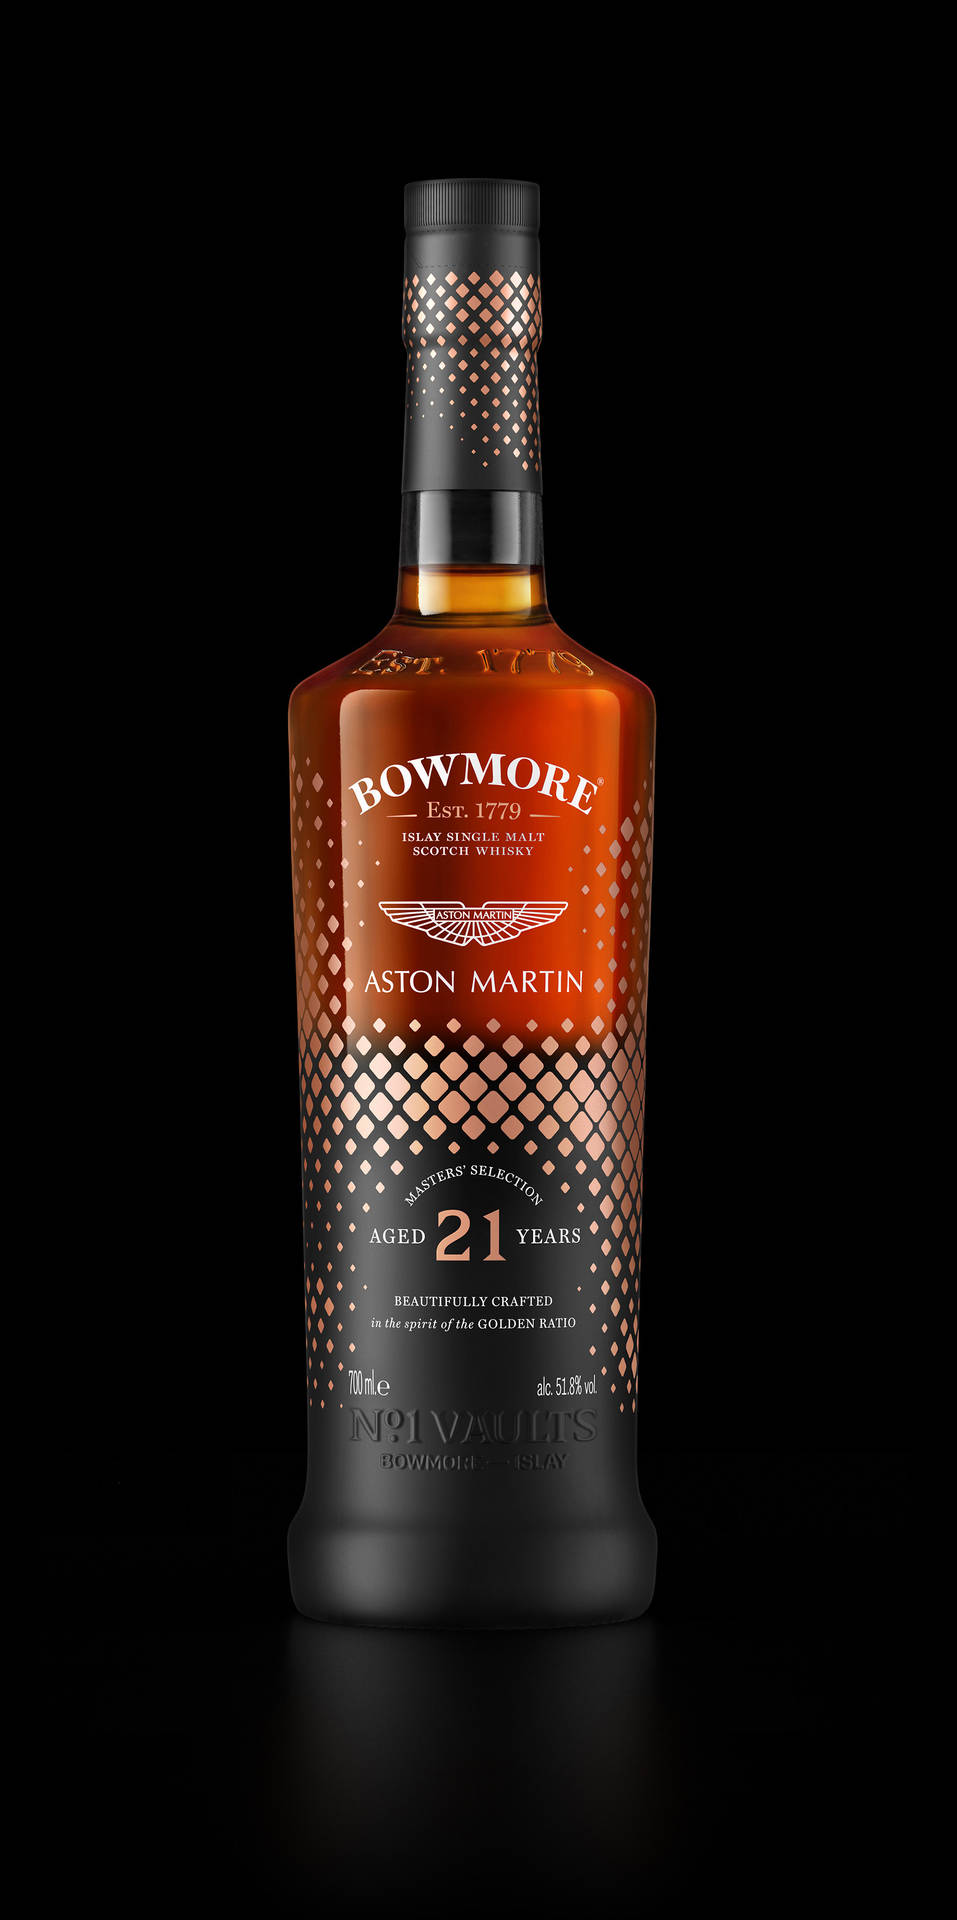 Unalussuosa Bottiglia Di Whisky Bowmore Di 21 Anni Sfondo